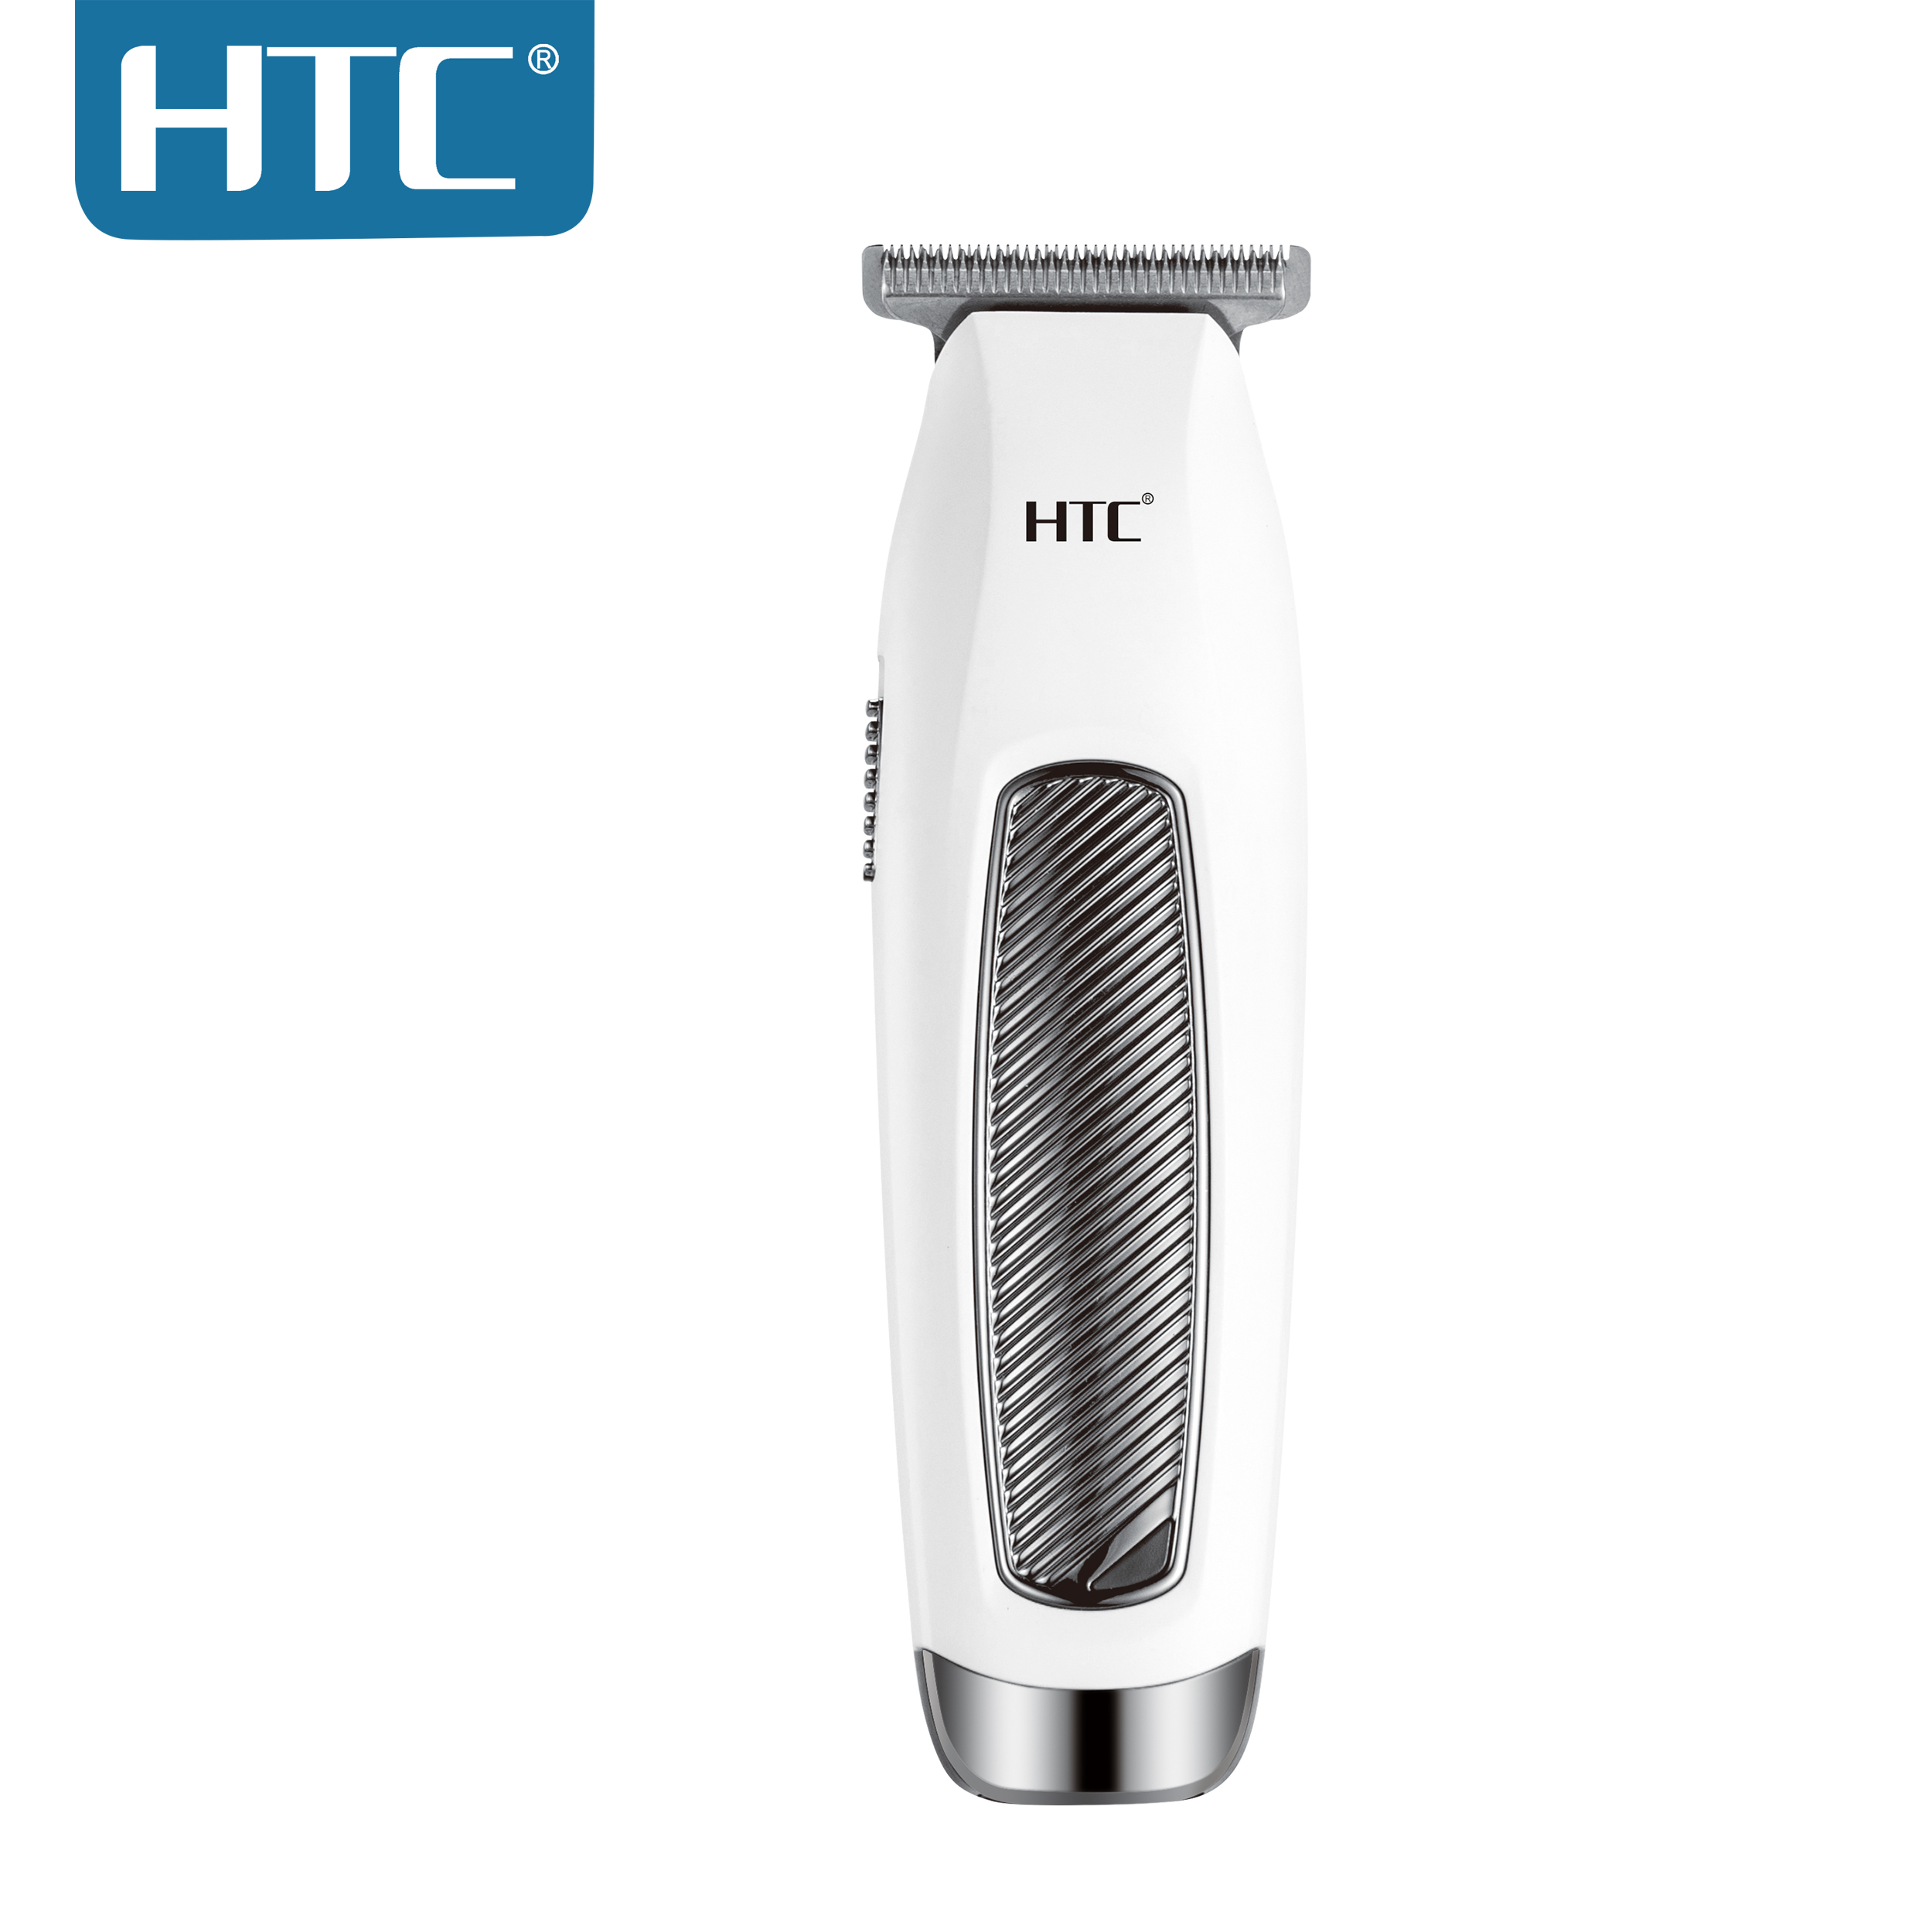 HTC Hair Hair clipper/Trimmer AT-229C